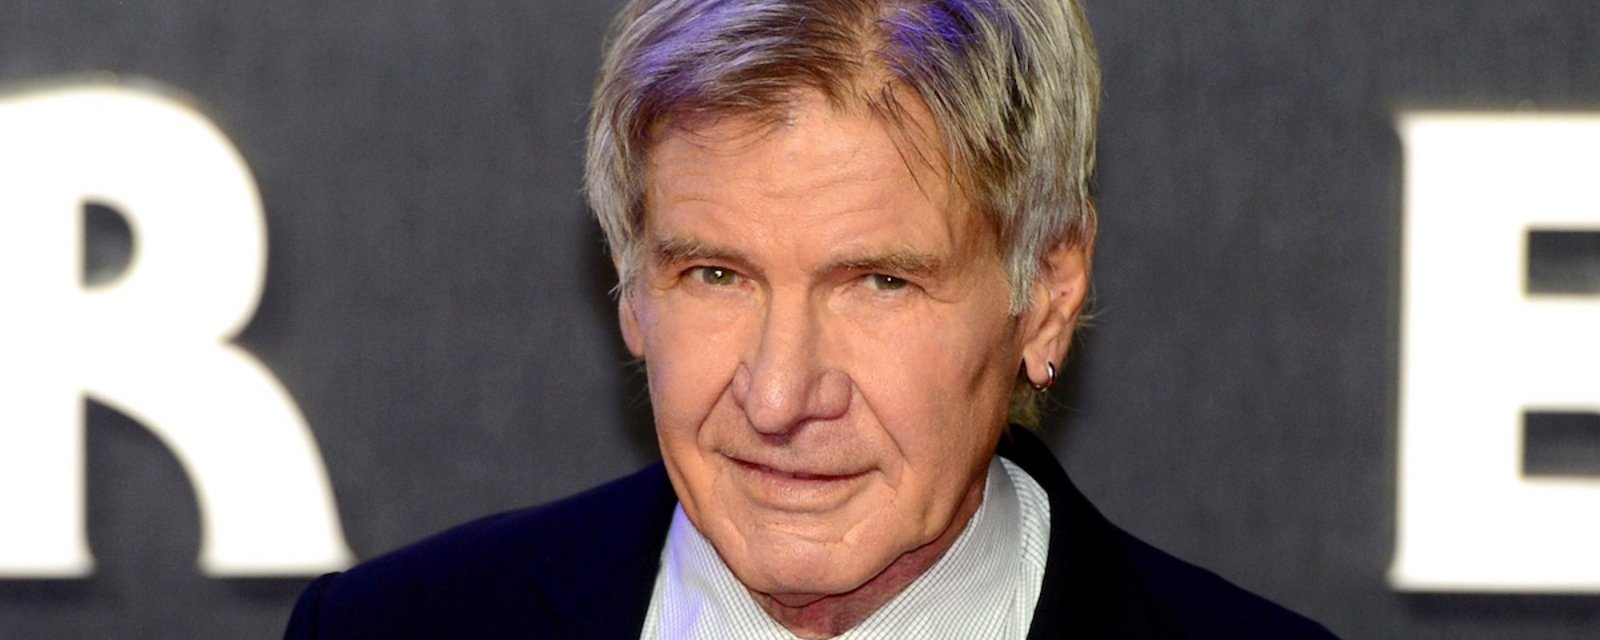 Harrison Ford est passé près de causer un terrible accident... Il devra assumer les conséquences